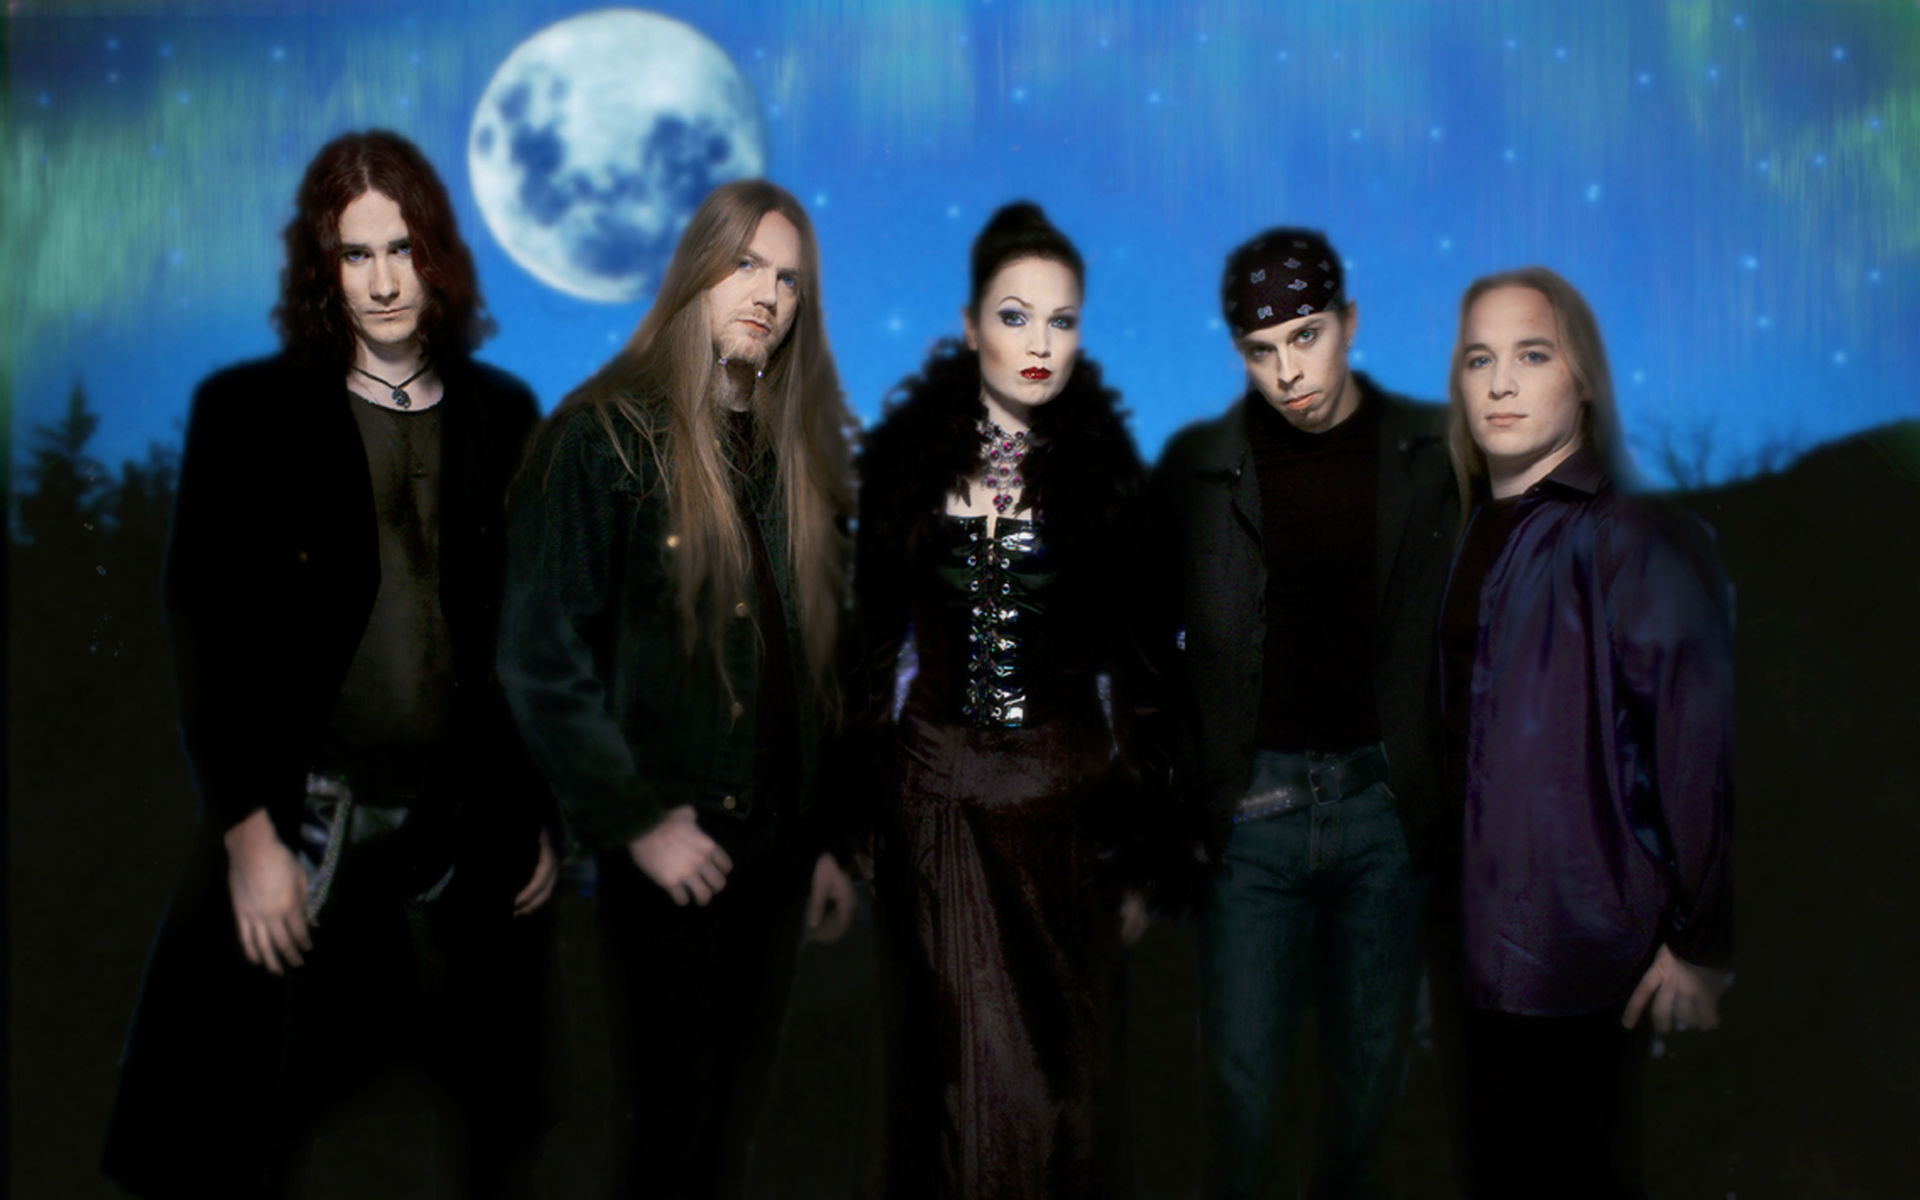 Download mobile wallpaper Nightwish, Tarja Turunen, Music for free.